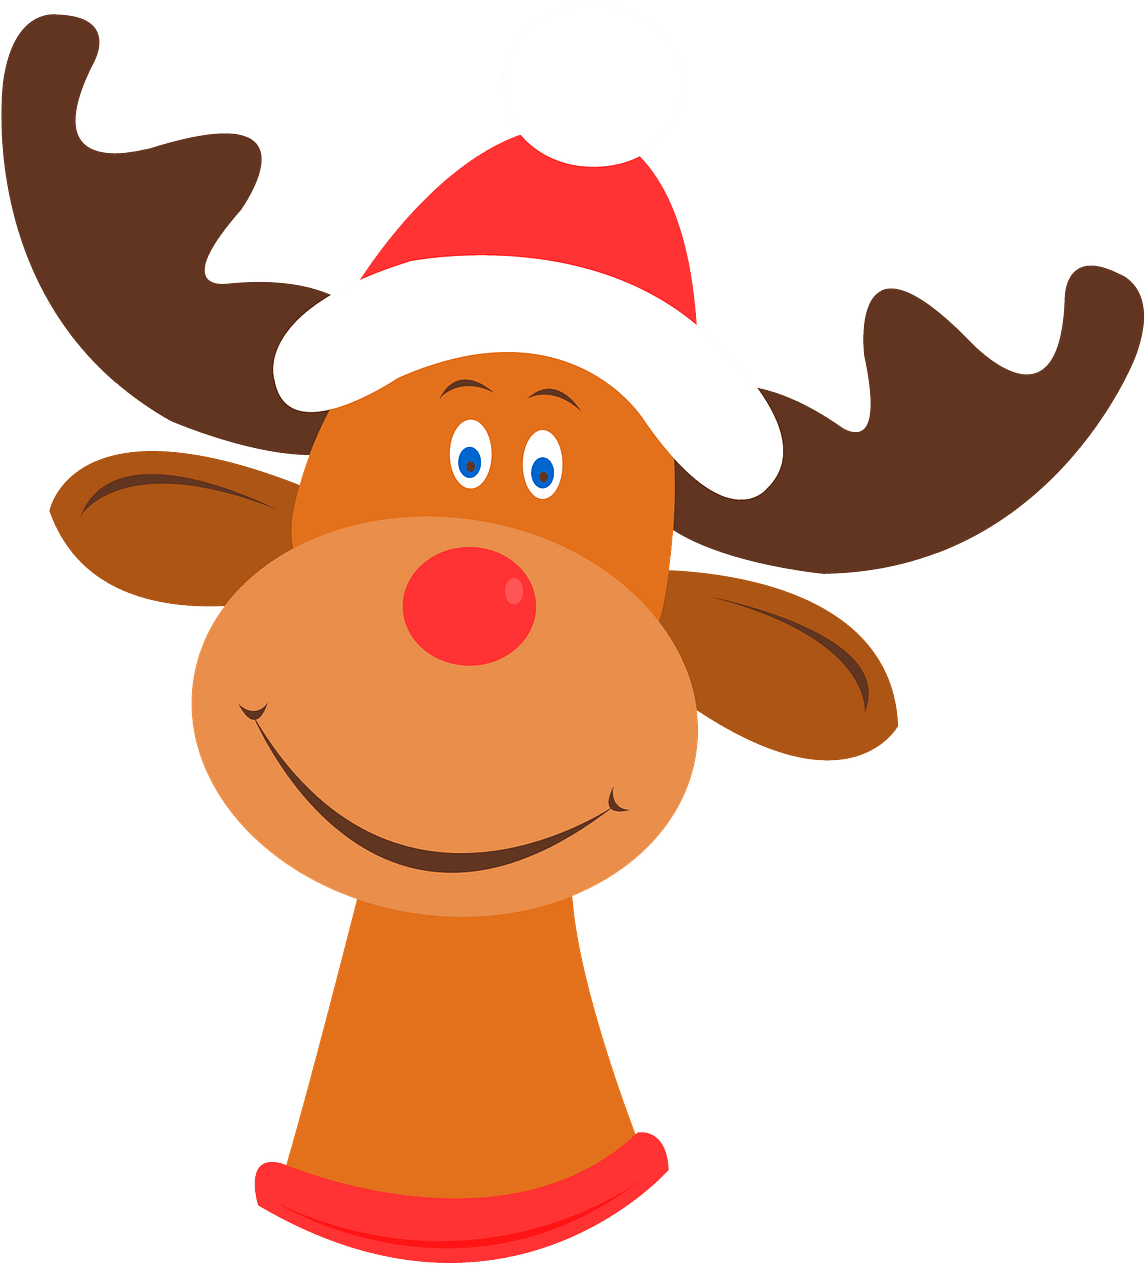 A Cartoon Of A Reindeer Wearing A Hat